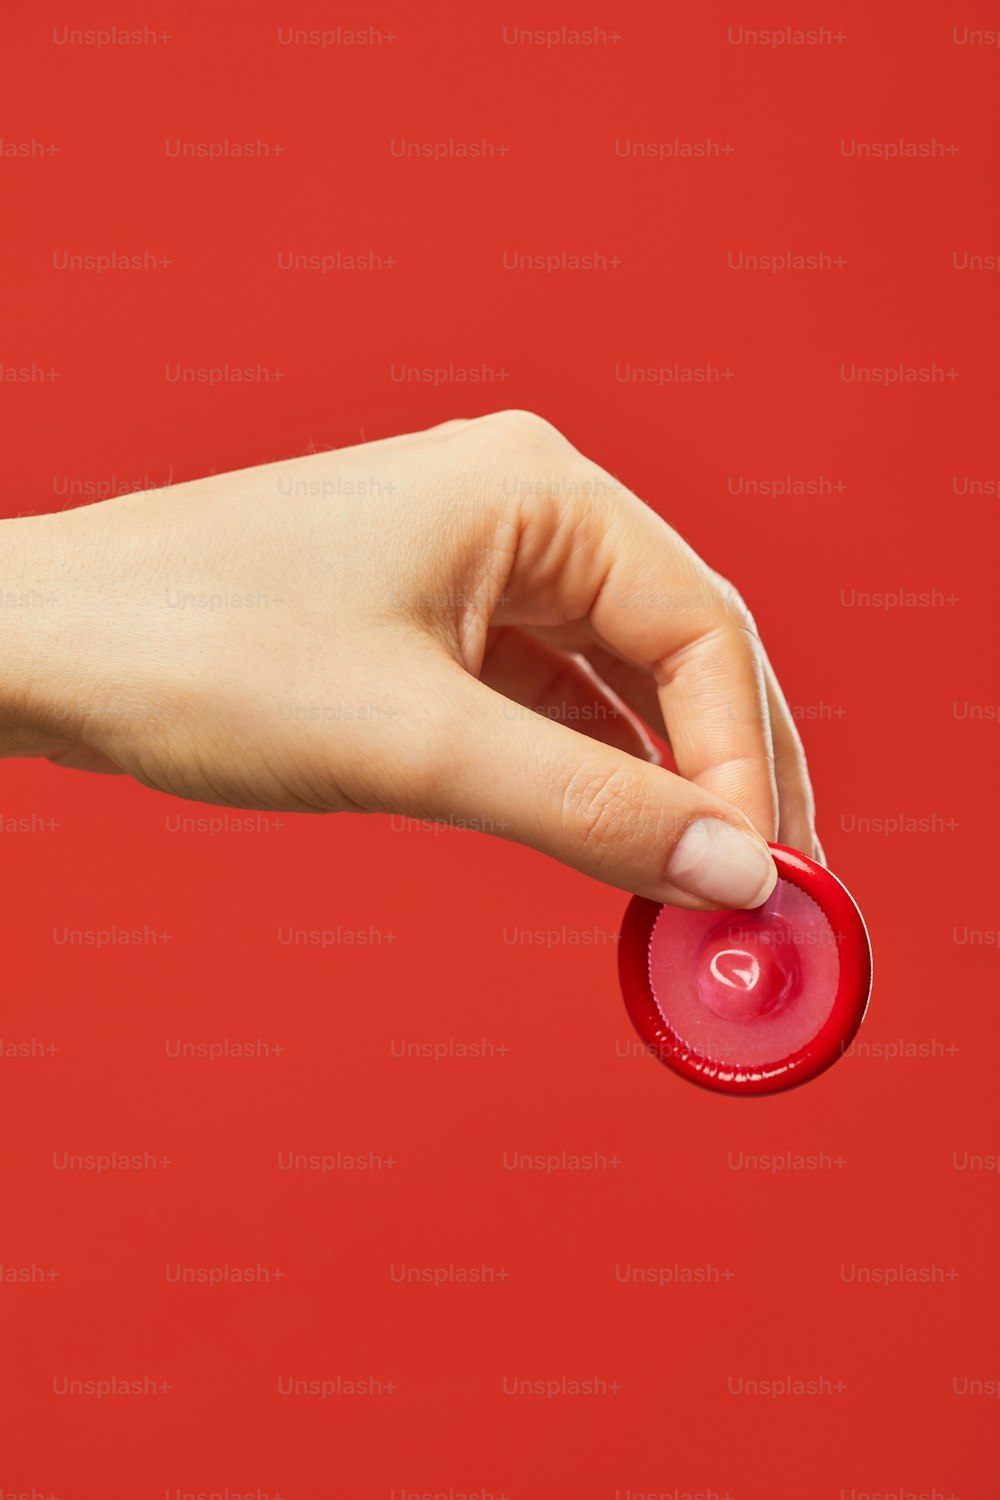 빨간 배경에 콘돔을 들고 있는 여성의 손의 생생한 근접 촬영 안전한 섹스와 보호 개념